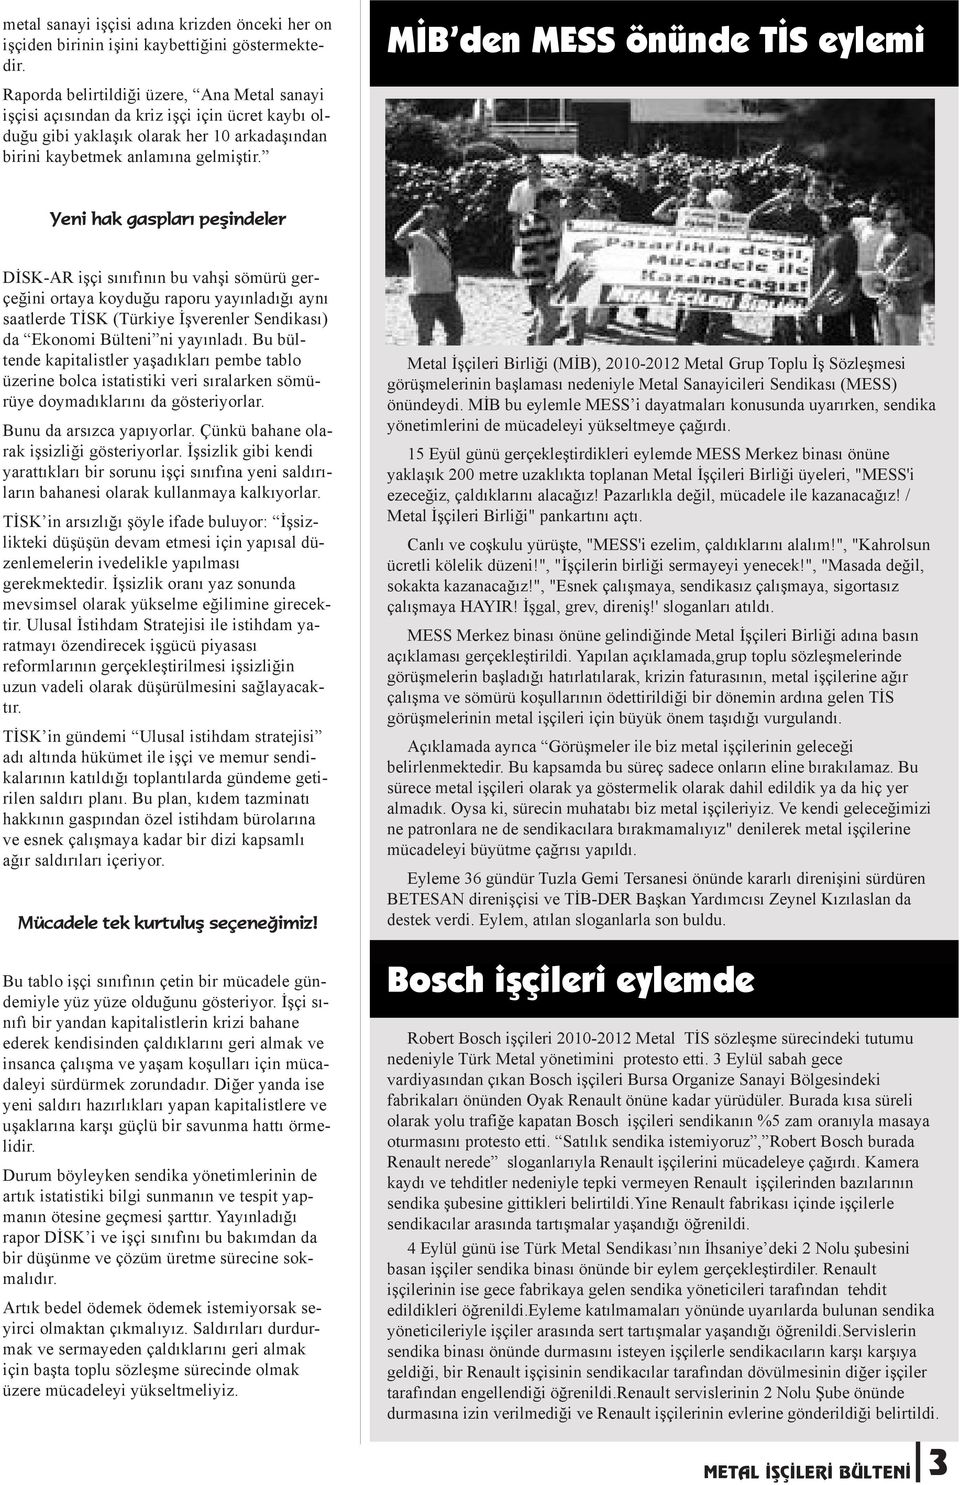 MİB den MESS önünde TİS eylemi Yeni hak gaspları peşindeler DİSK-AR işçi sınıfının bu vahşi sömürü gerçeğini ortaya koyduğu raporu yayınladığı aynı saatlerde TİSK (Türkiye İşverenler Sendikası) da